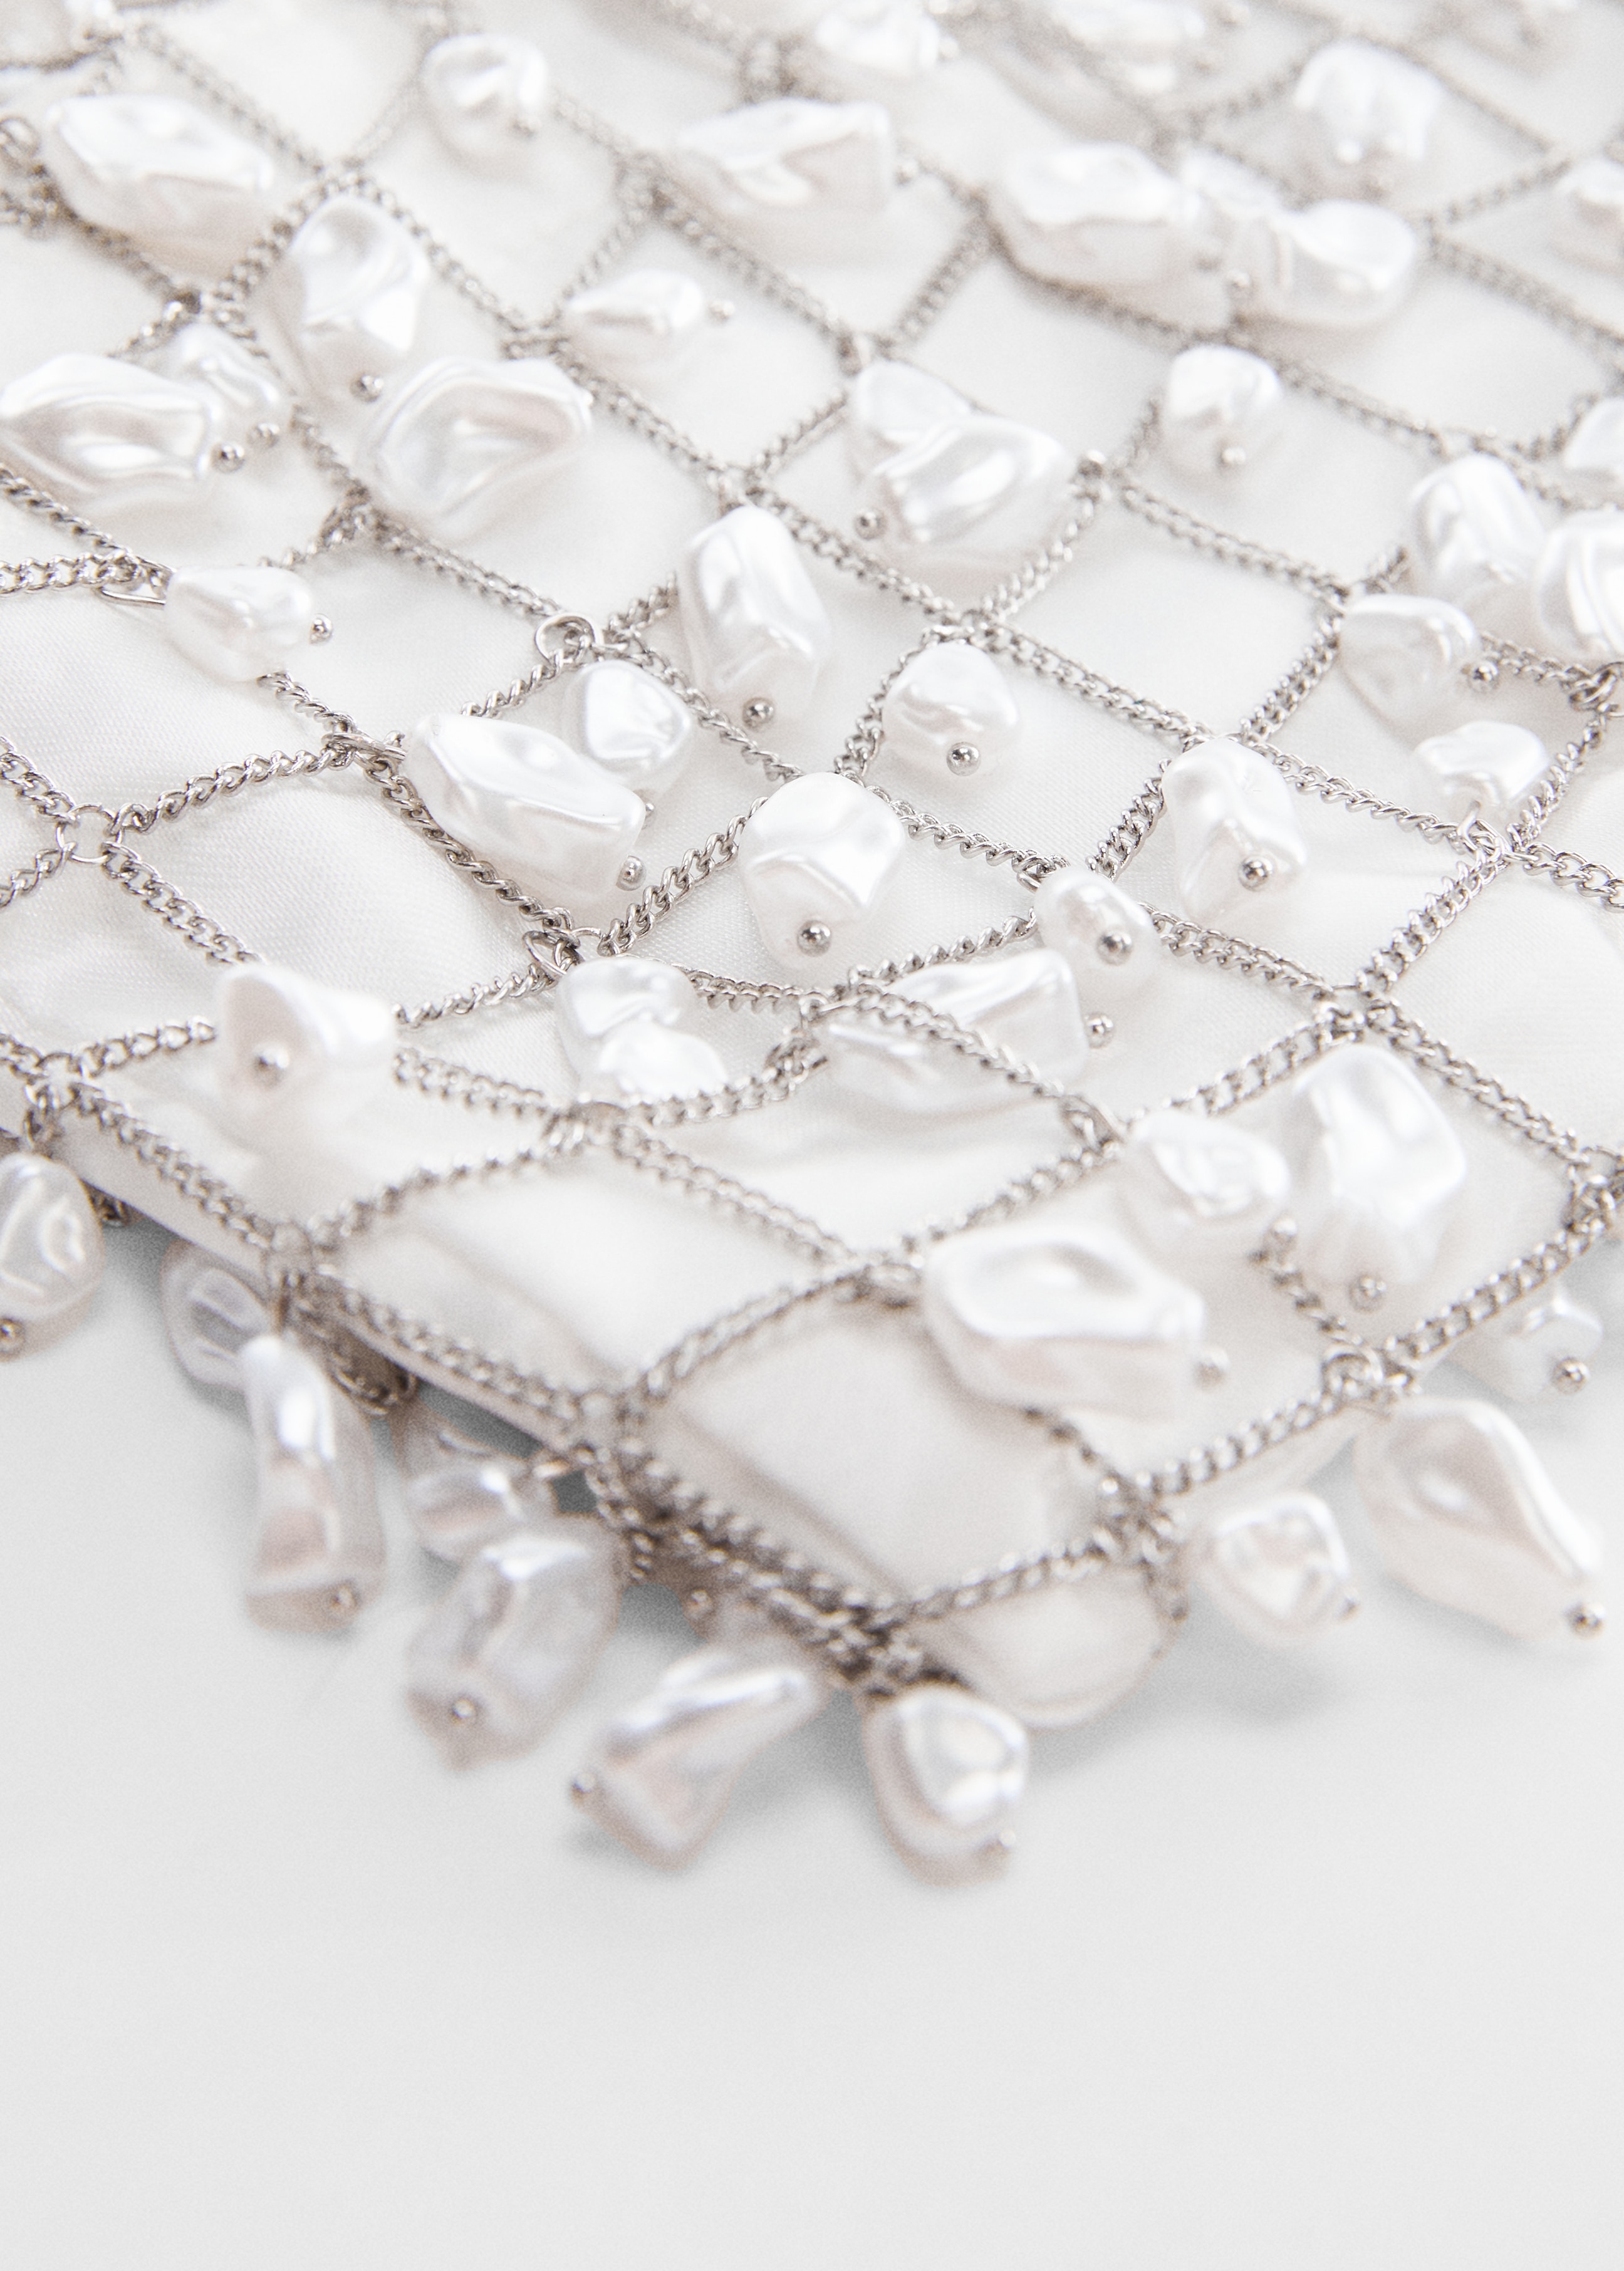 Metallic pearl mesh bag - Details of the article 1